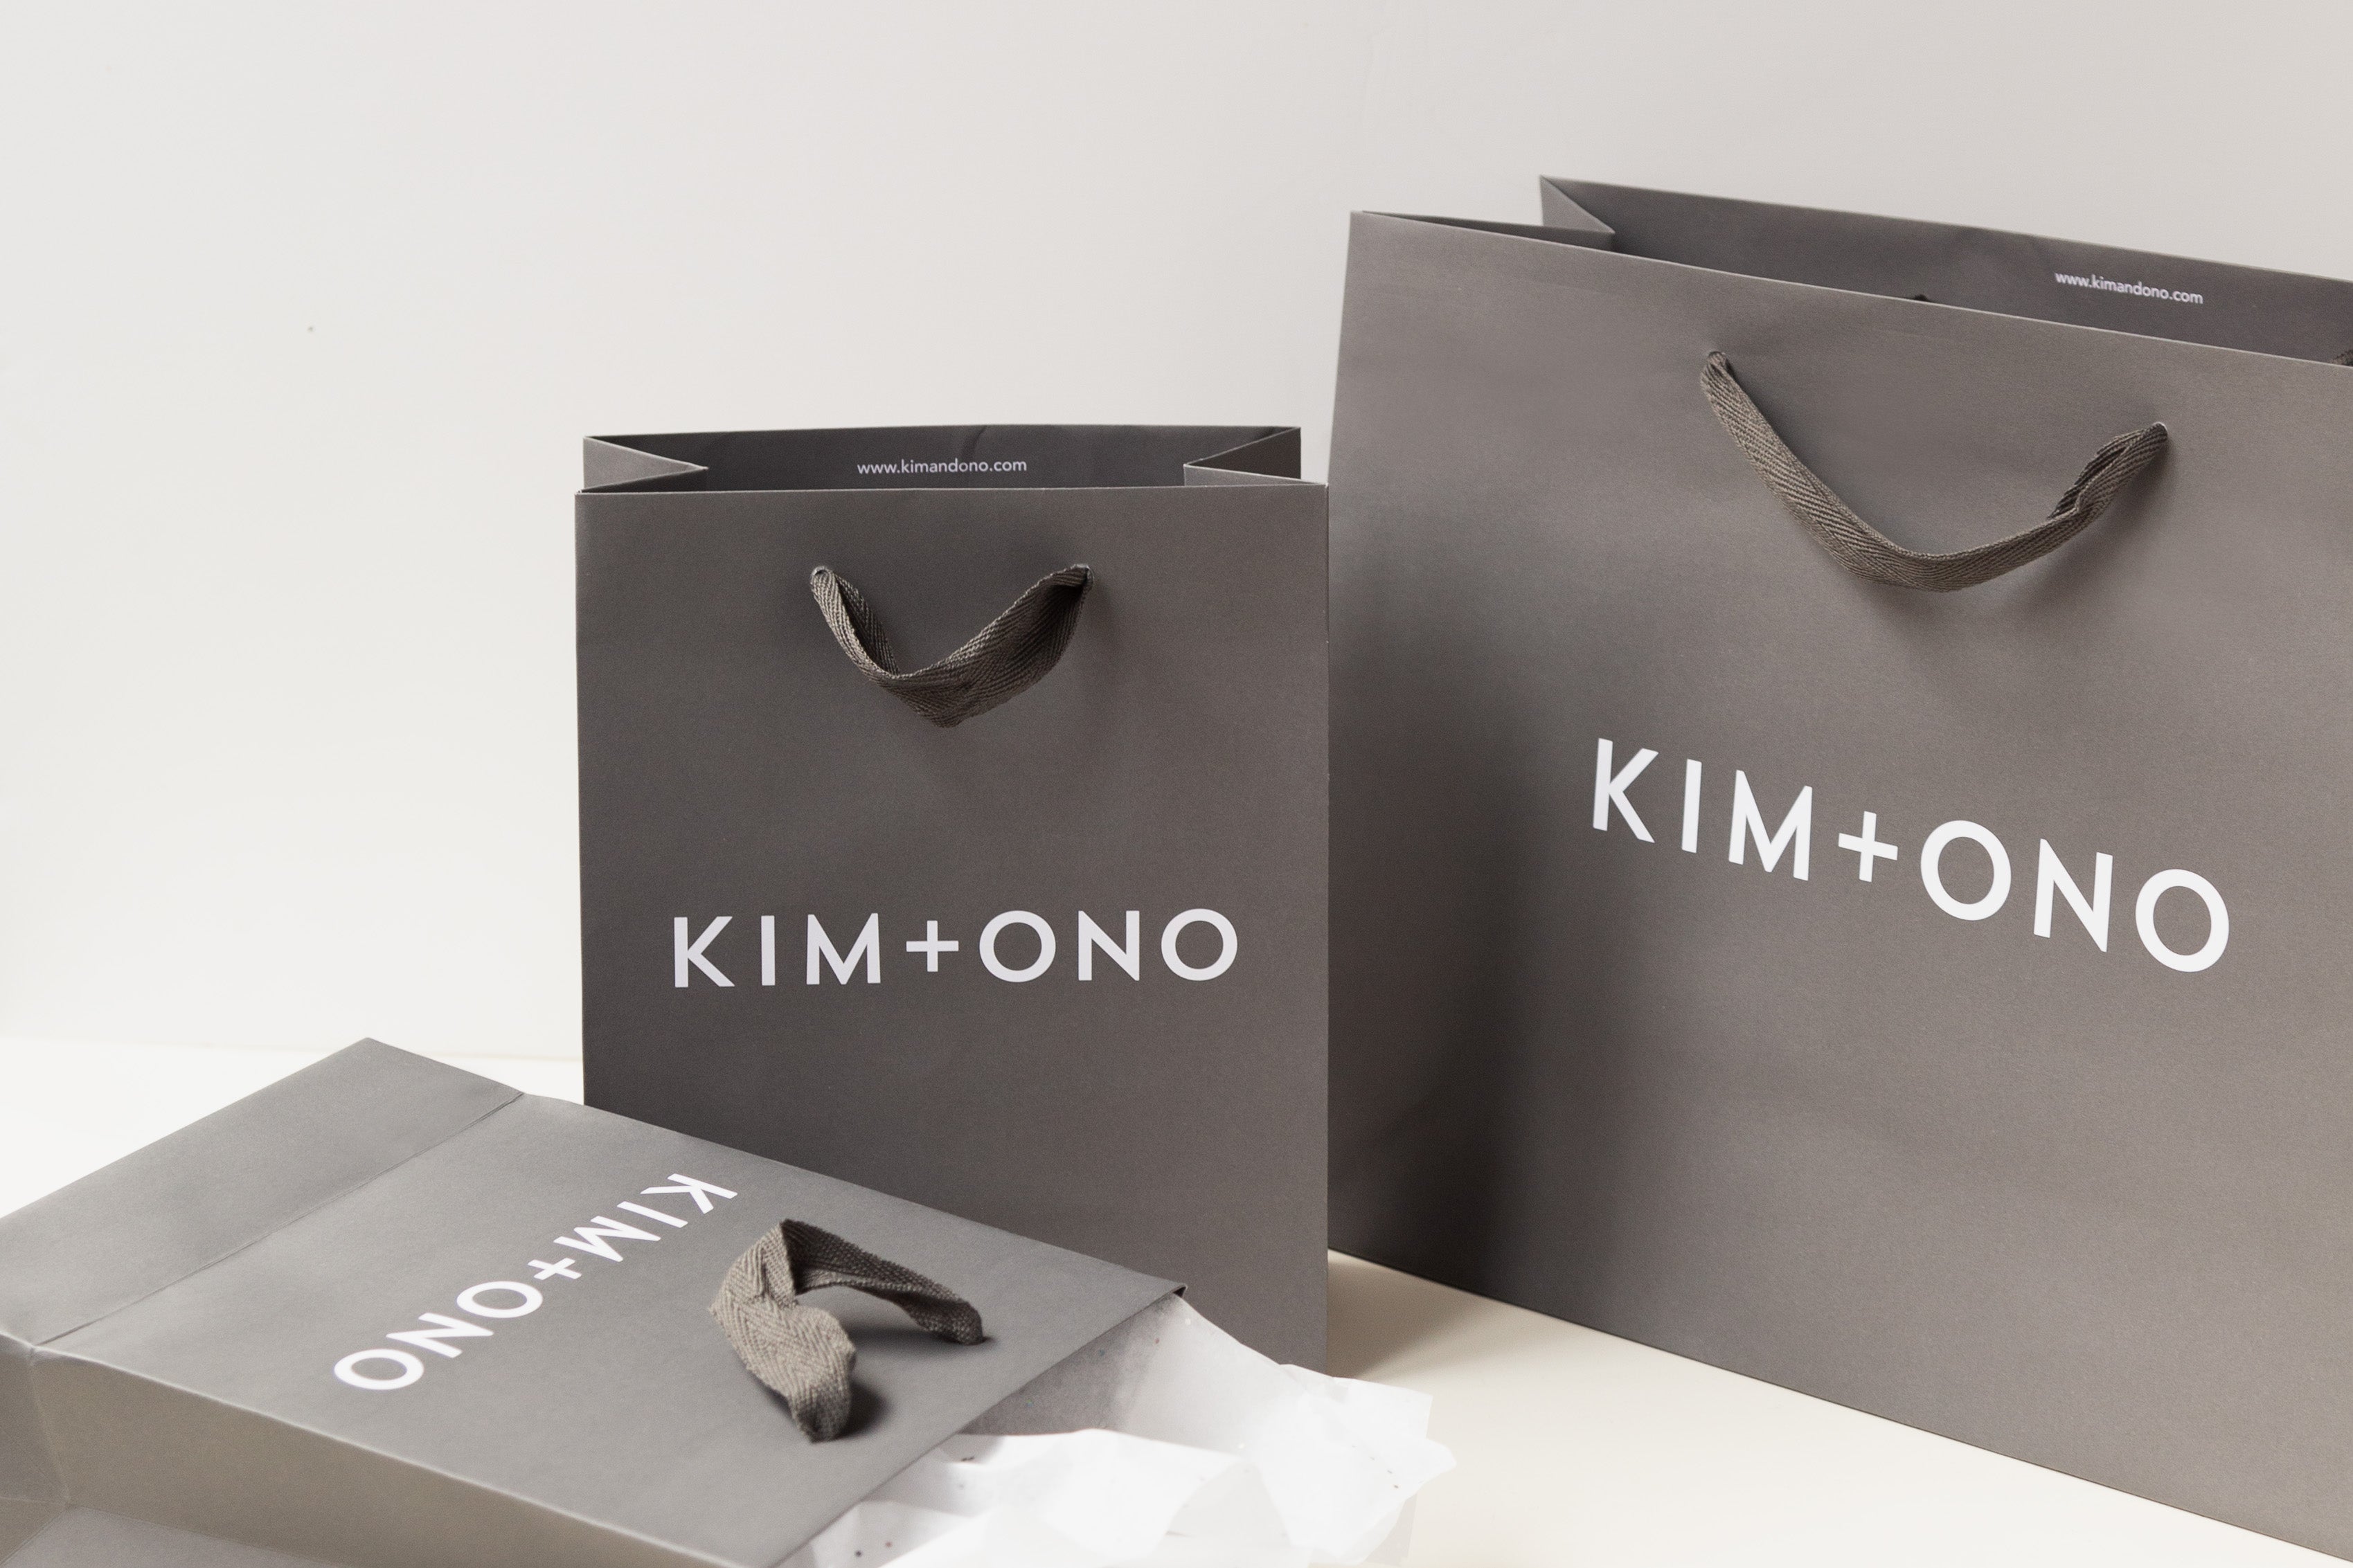 KIM+ONO Kimono Robes